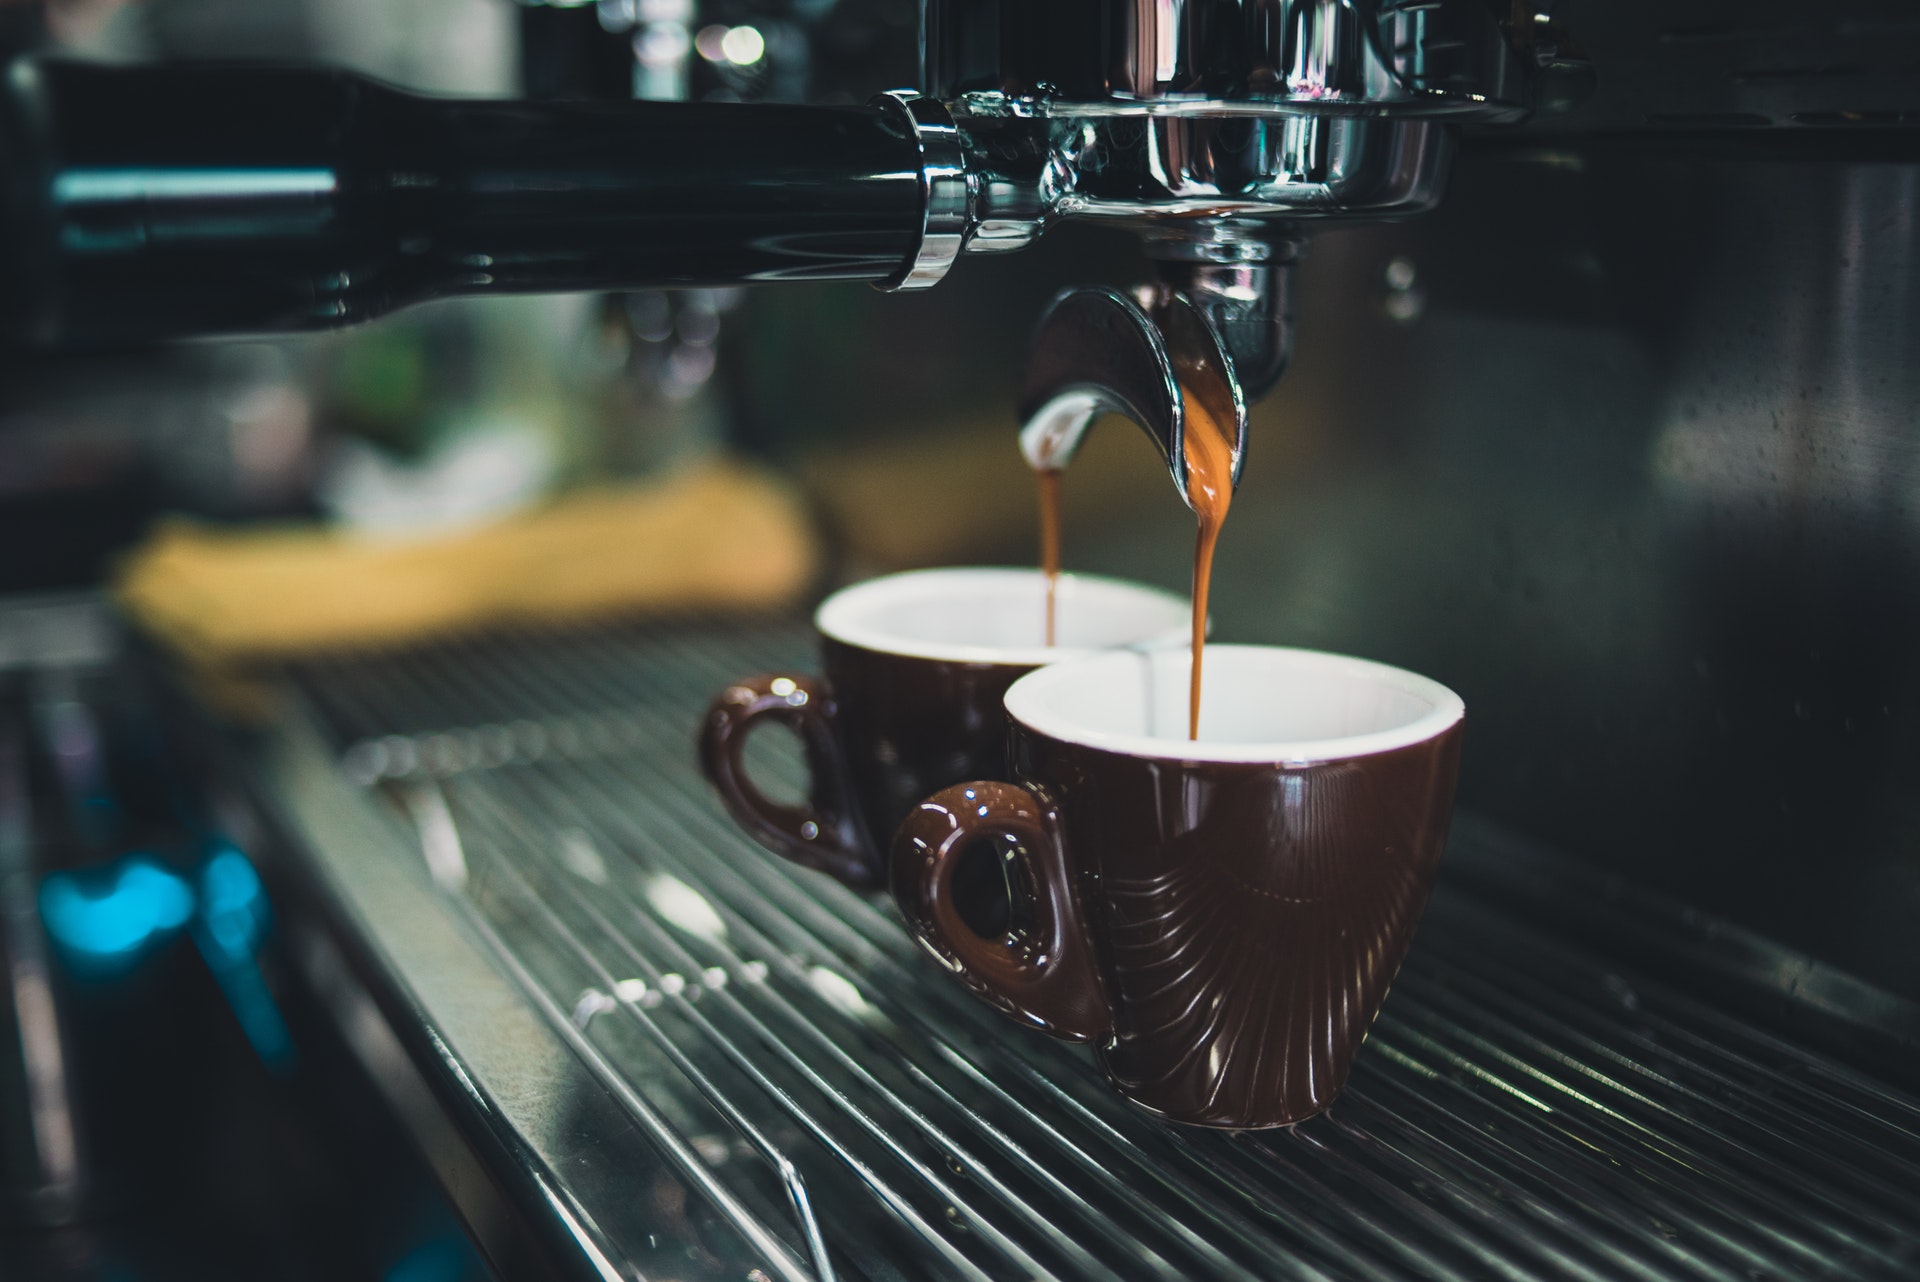 فنجان قهوة معزز بالفيتامينات ومضادات الأكسدة والفوائد المغذية